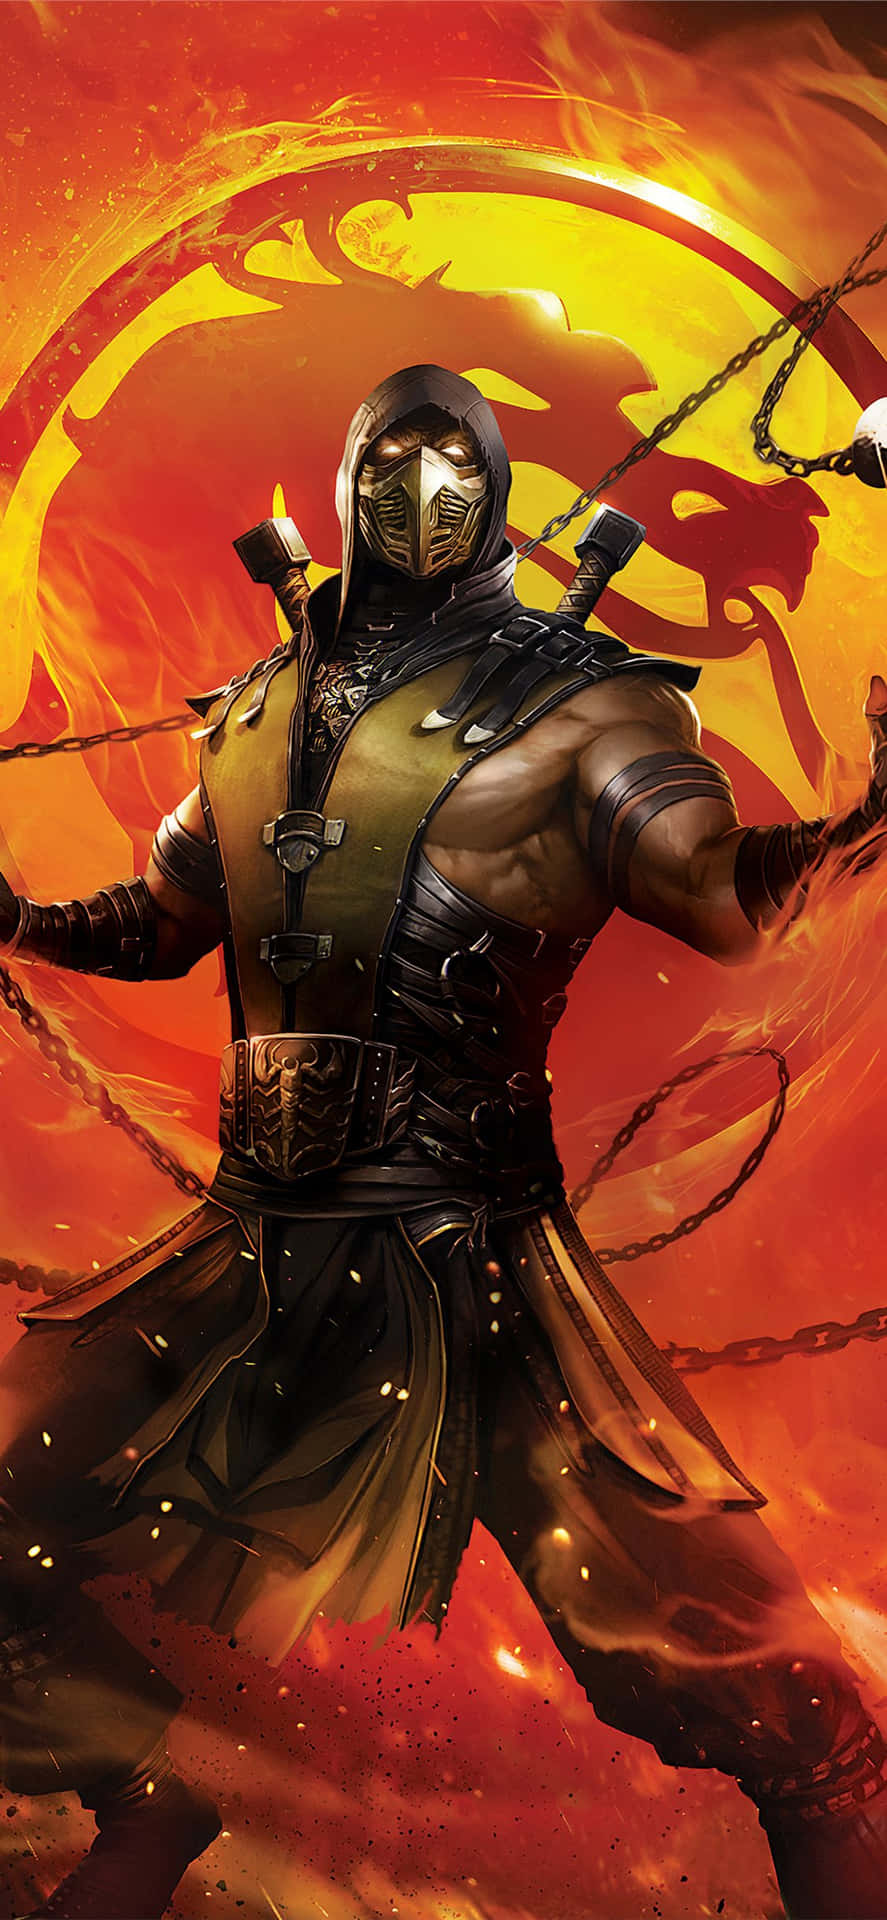 Tag kampen til næste niveau med Mortal Kombat, nu tilgængelig på iPhone. Wallpaper